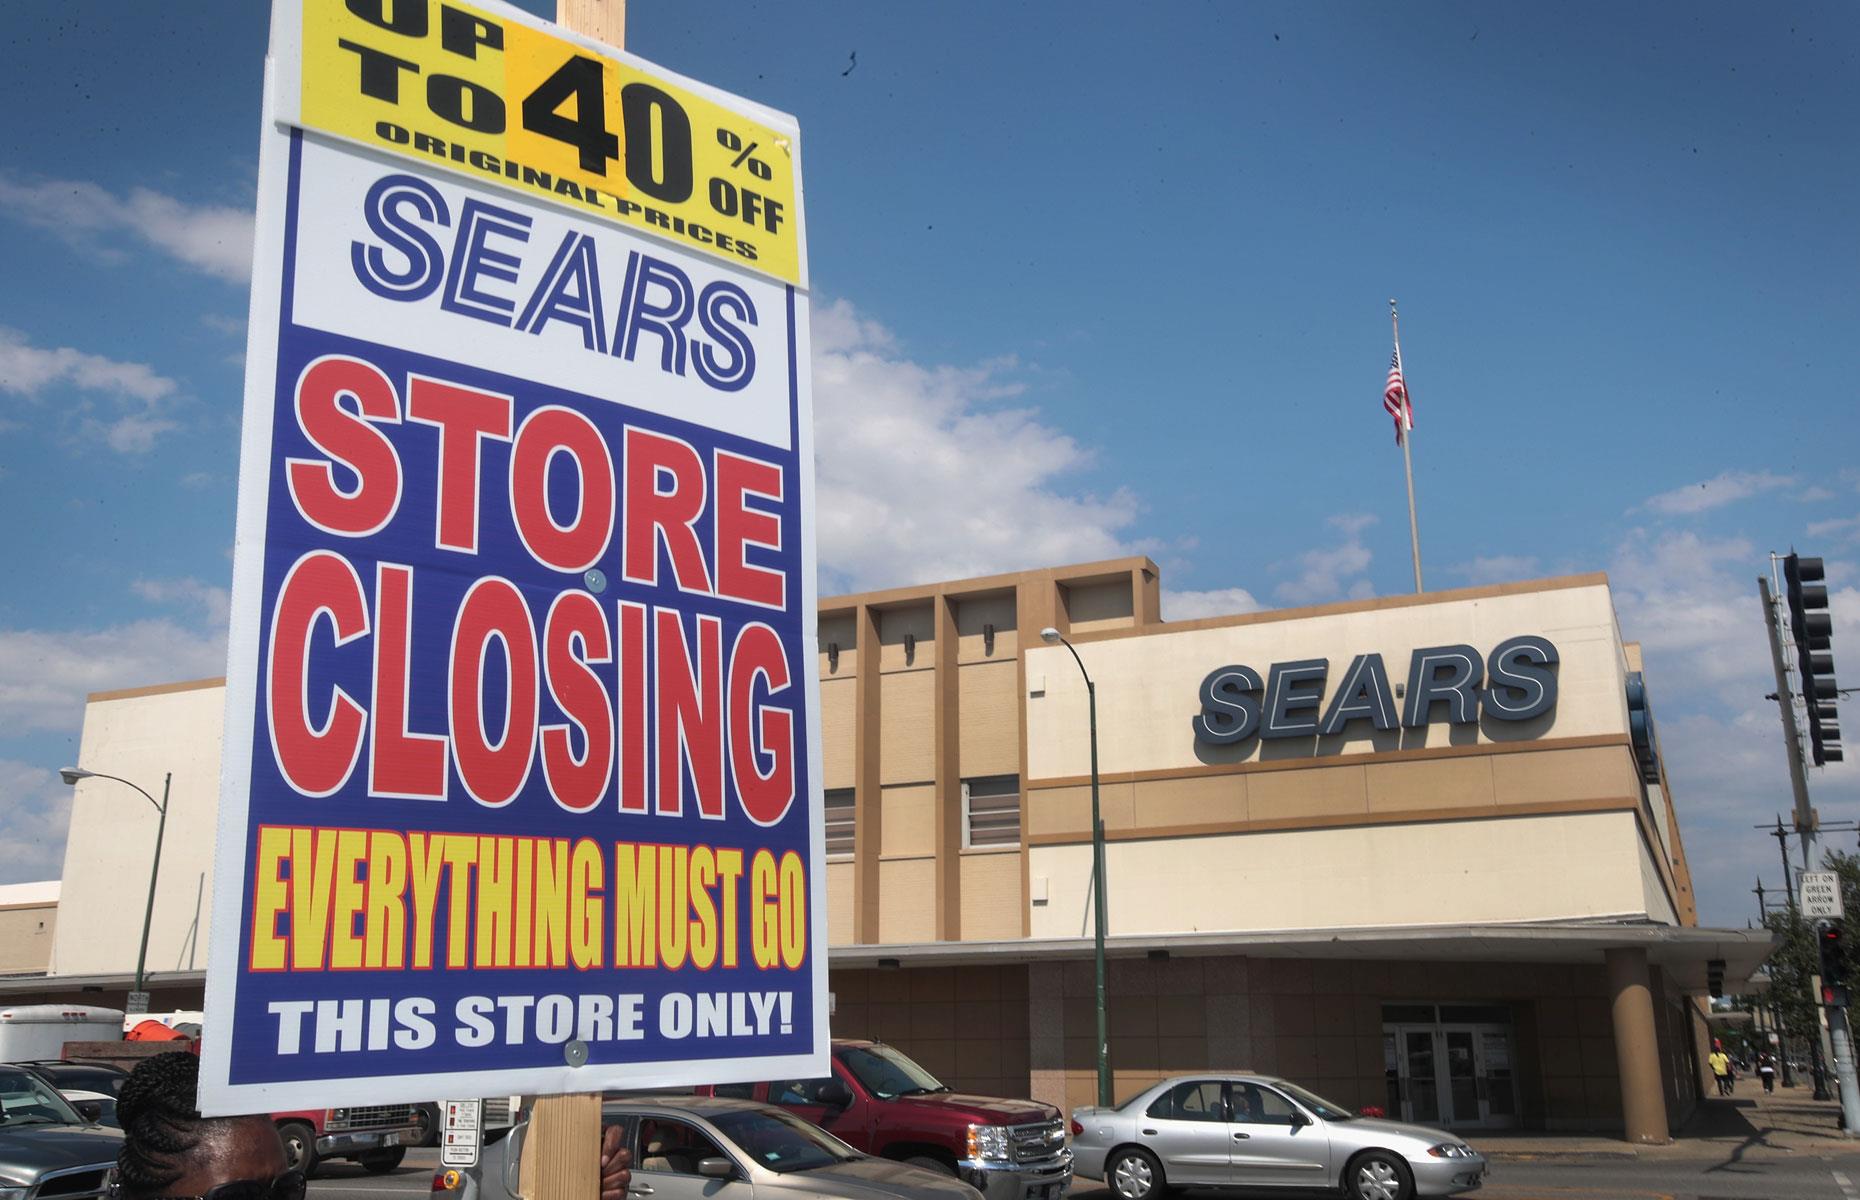 Kmart & Sears in 2005